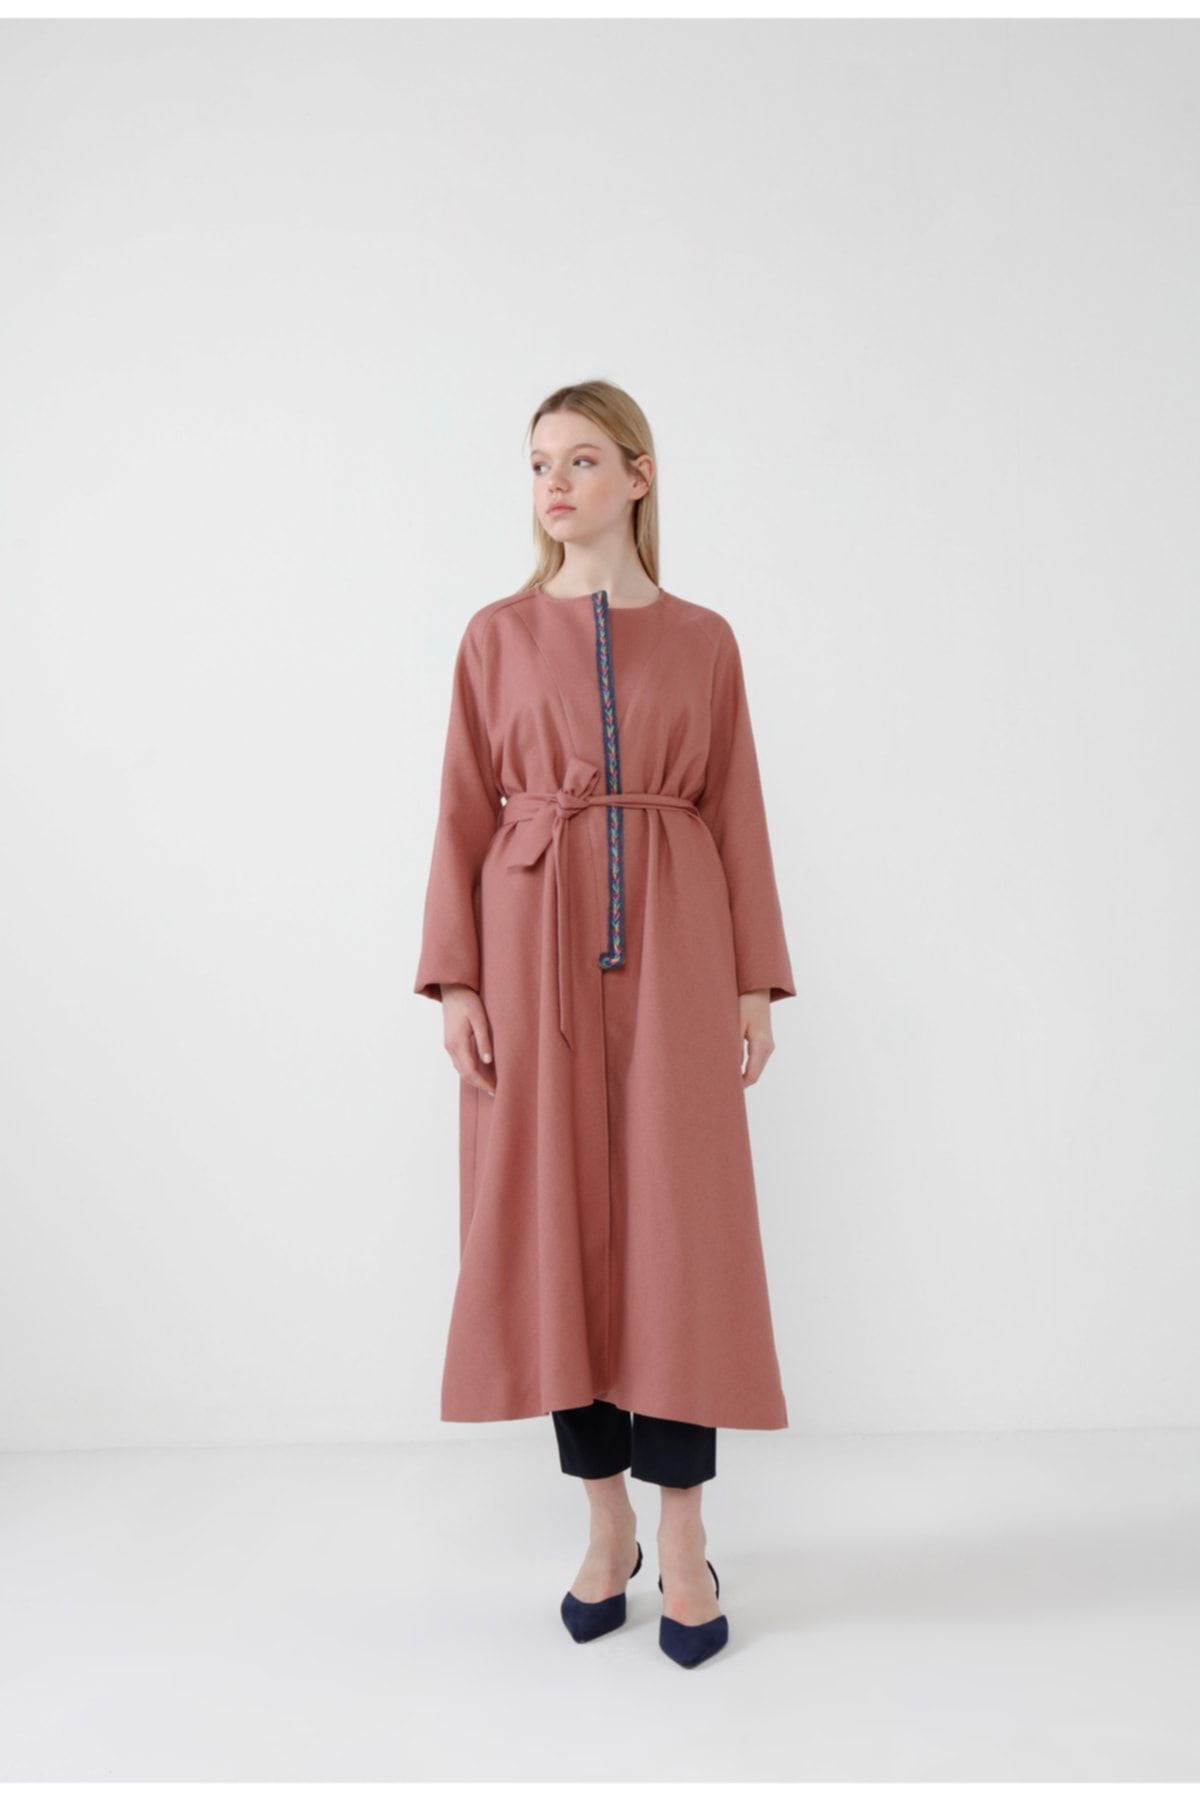 R4 Pembe Beli Kuşaklı Yünlü Özel Tasarım Biyeli Palto Kaban